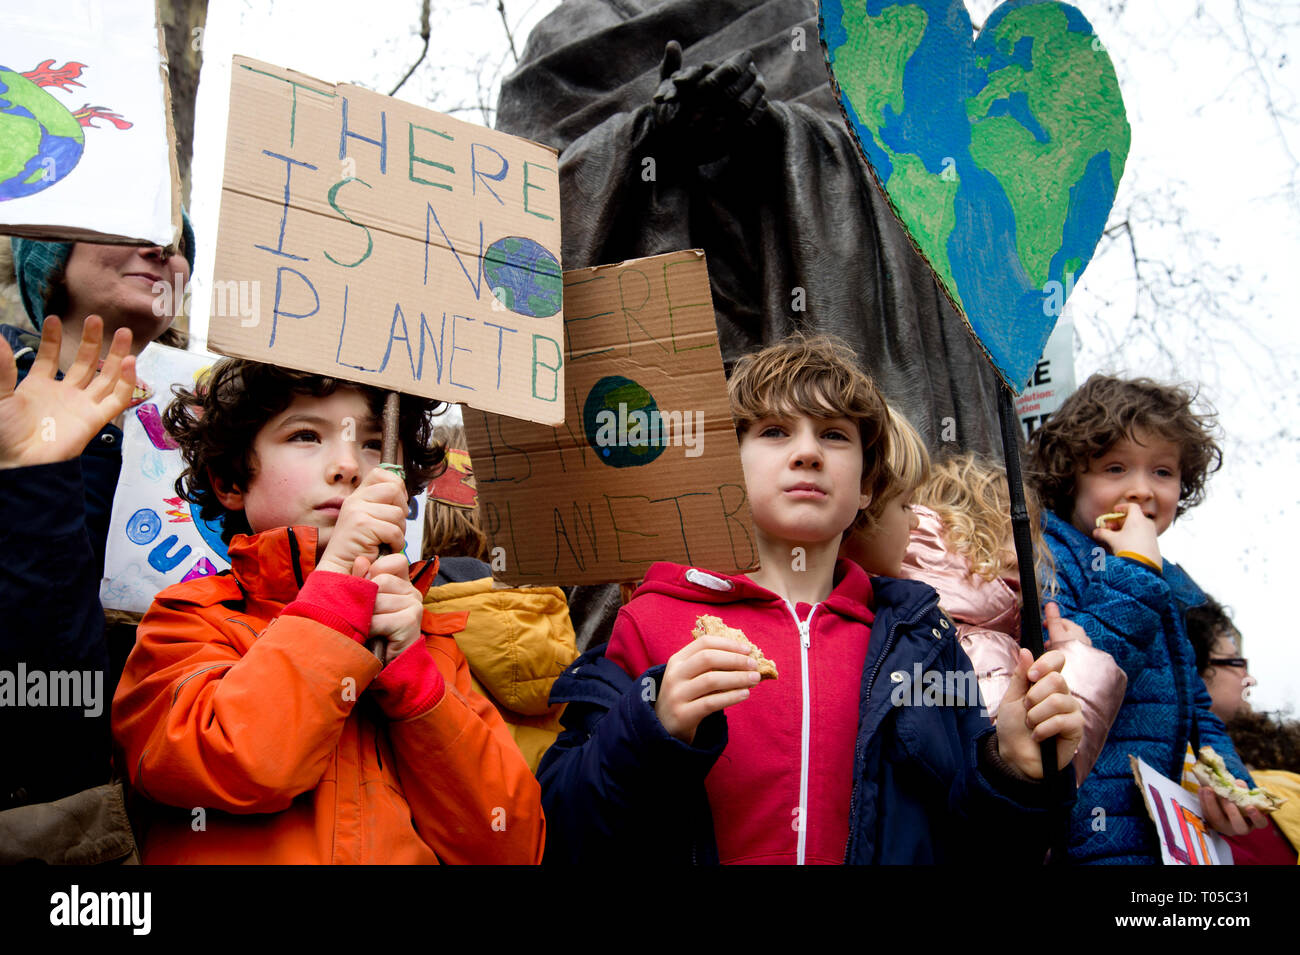 London. Schüler Streik für Klimawandel, Teil einer globalen Aktion. Junge Demonstranten, man hält ein Schild mit der Aufschrift "Es gibt kein Planet B' ist. Stockfoto